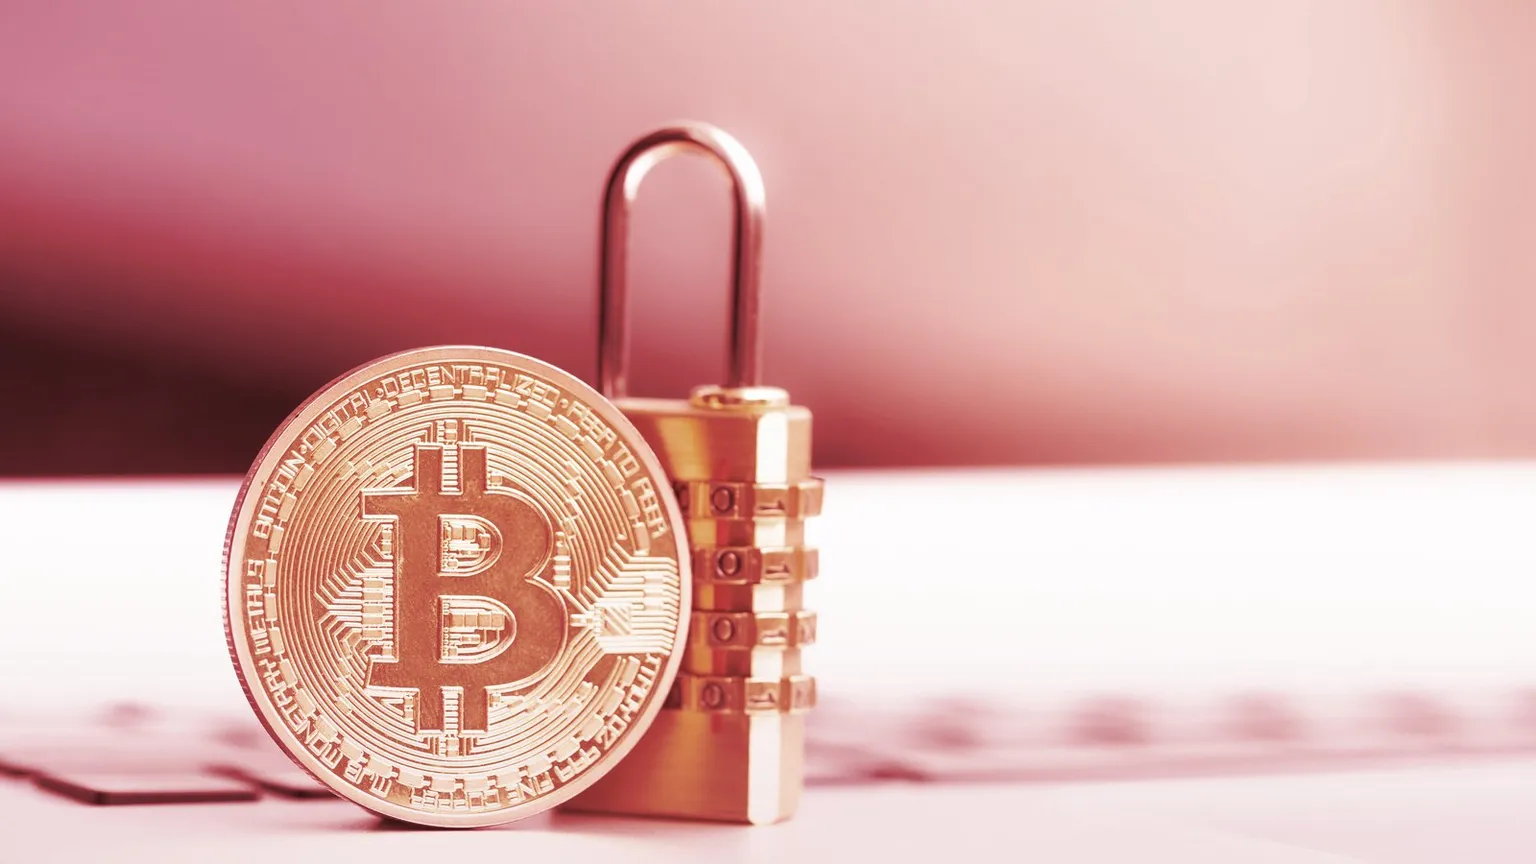 ¿Cómo de privadas son las transacciones estándar de Bitcoin? No mucho. Imagen: Shutterstock